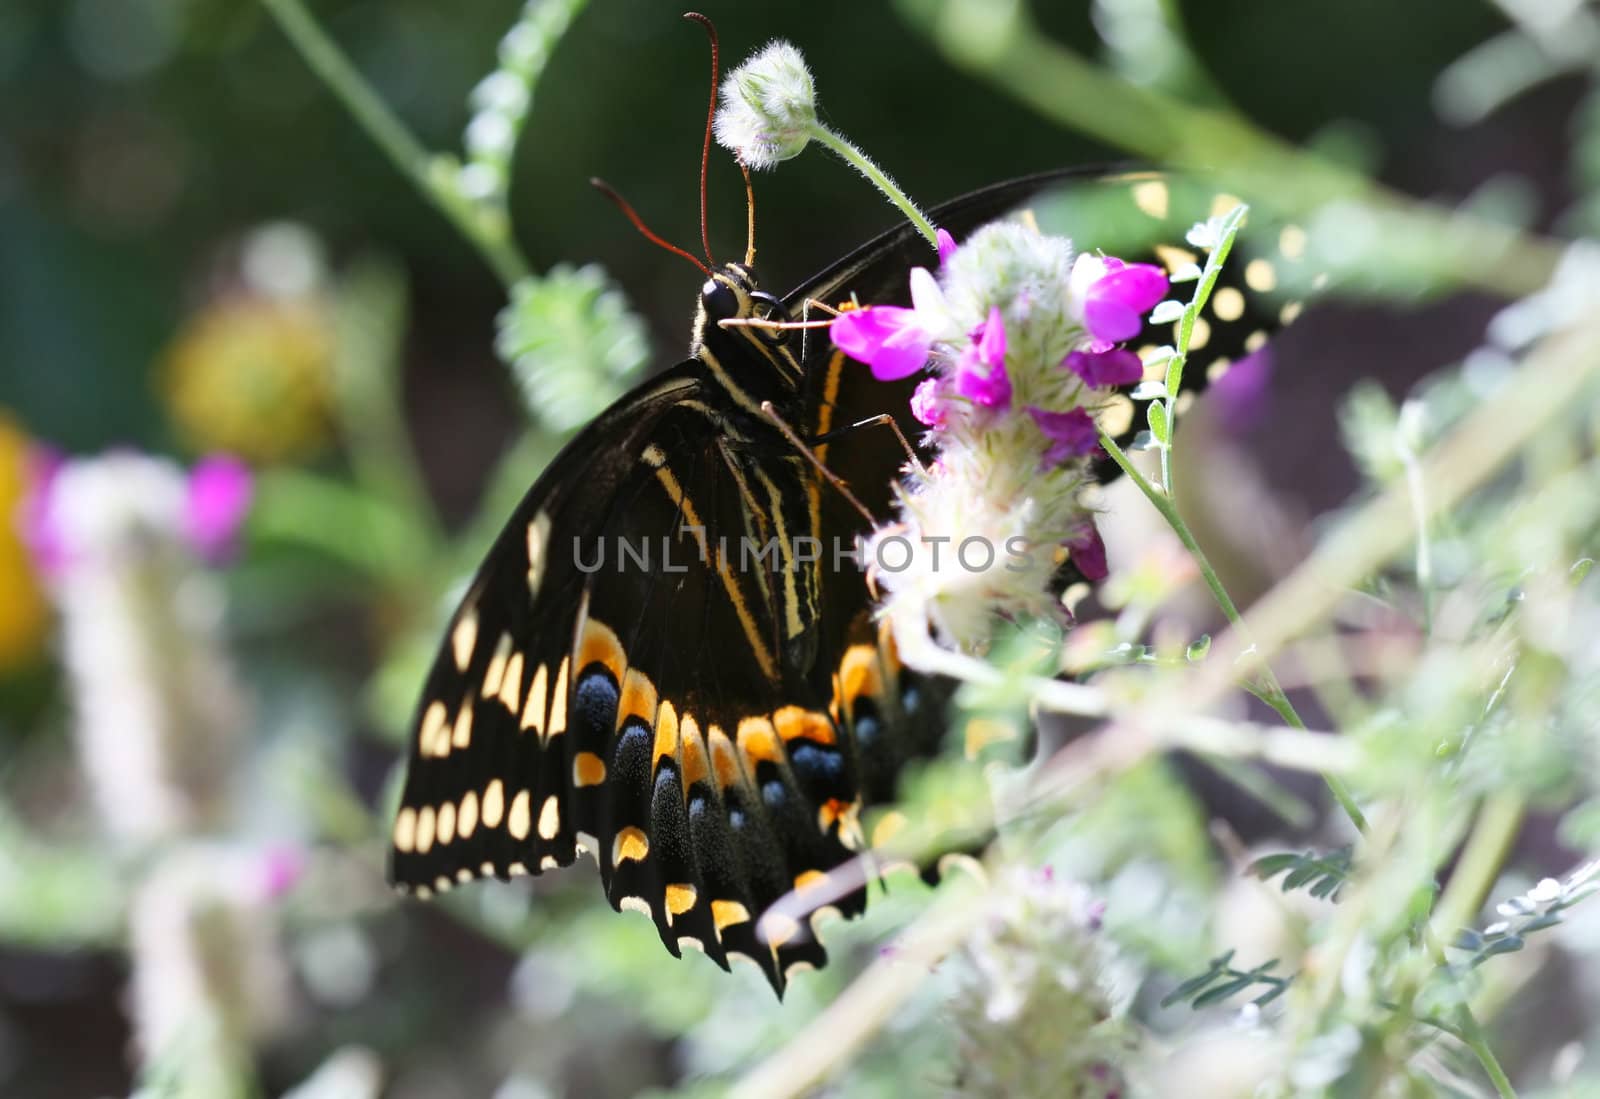  Buckeye butterfly by deserttrends